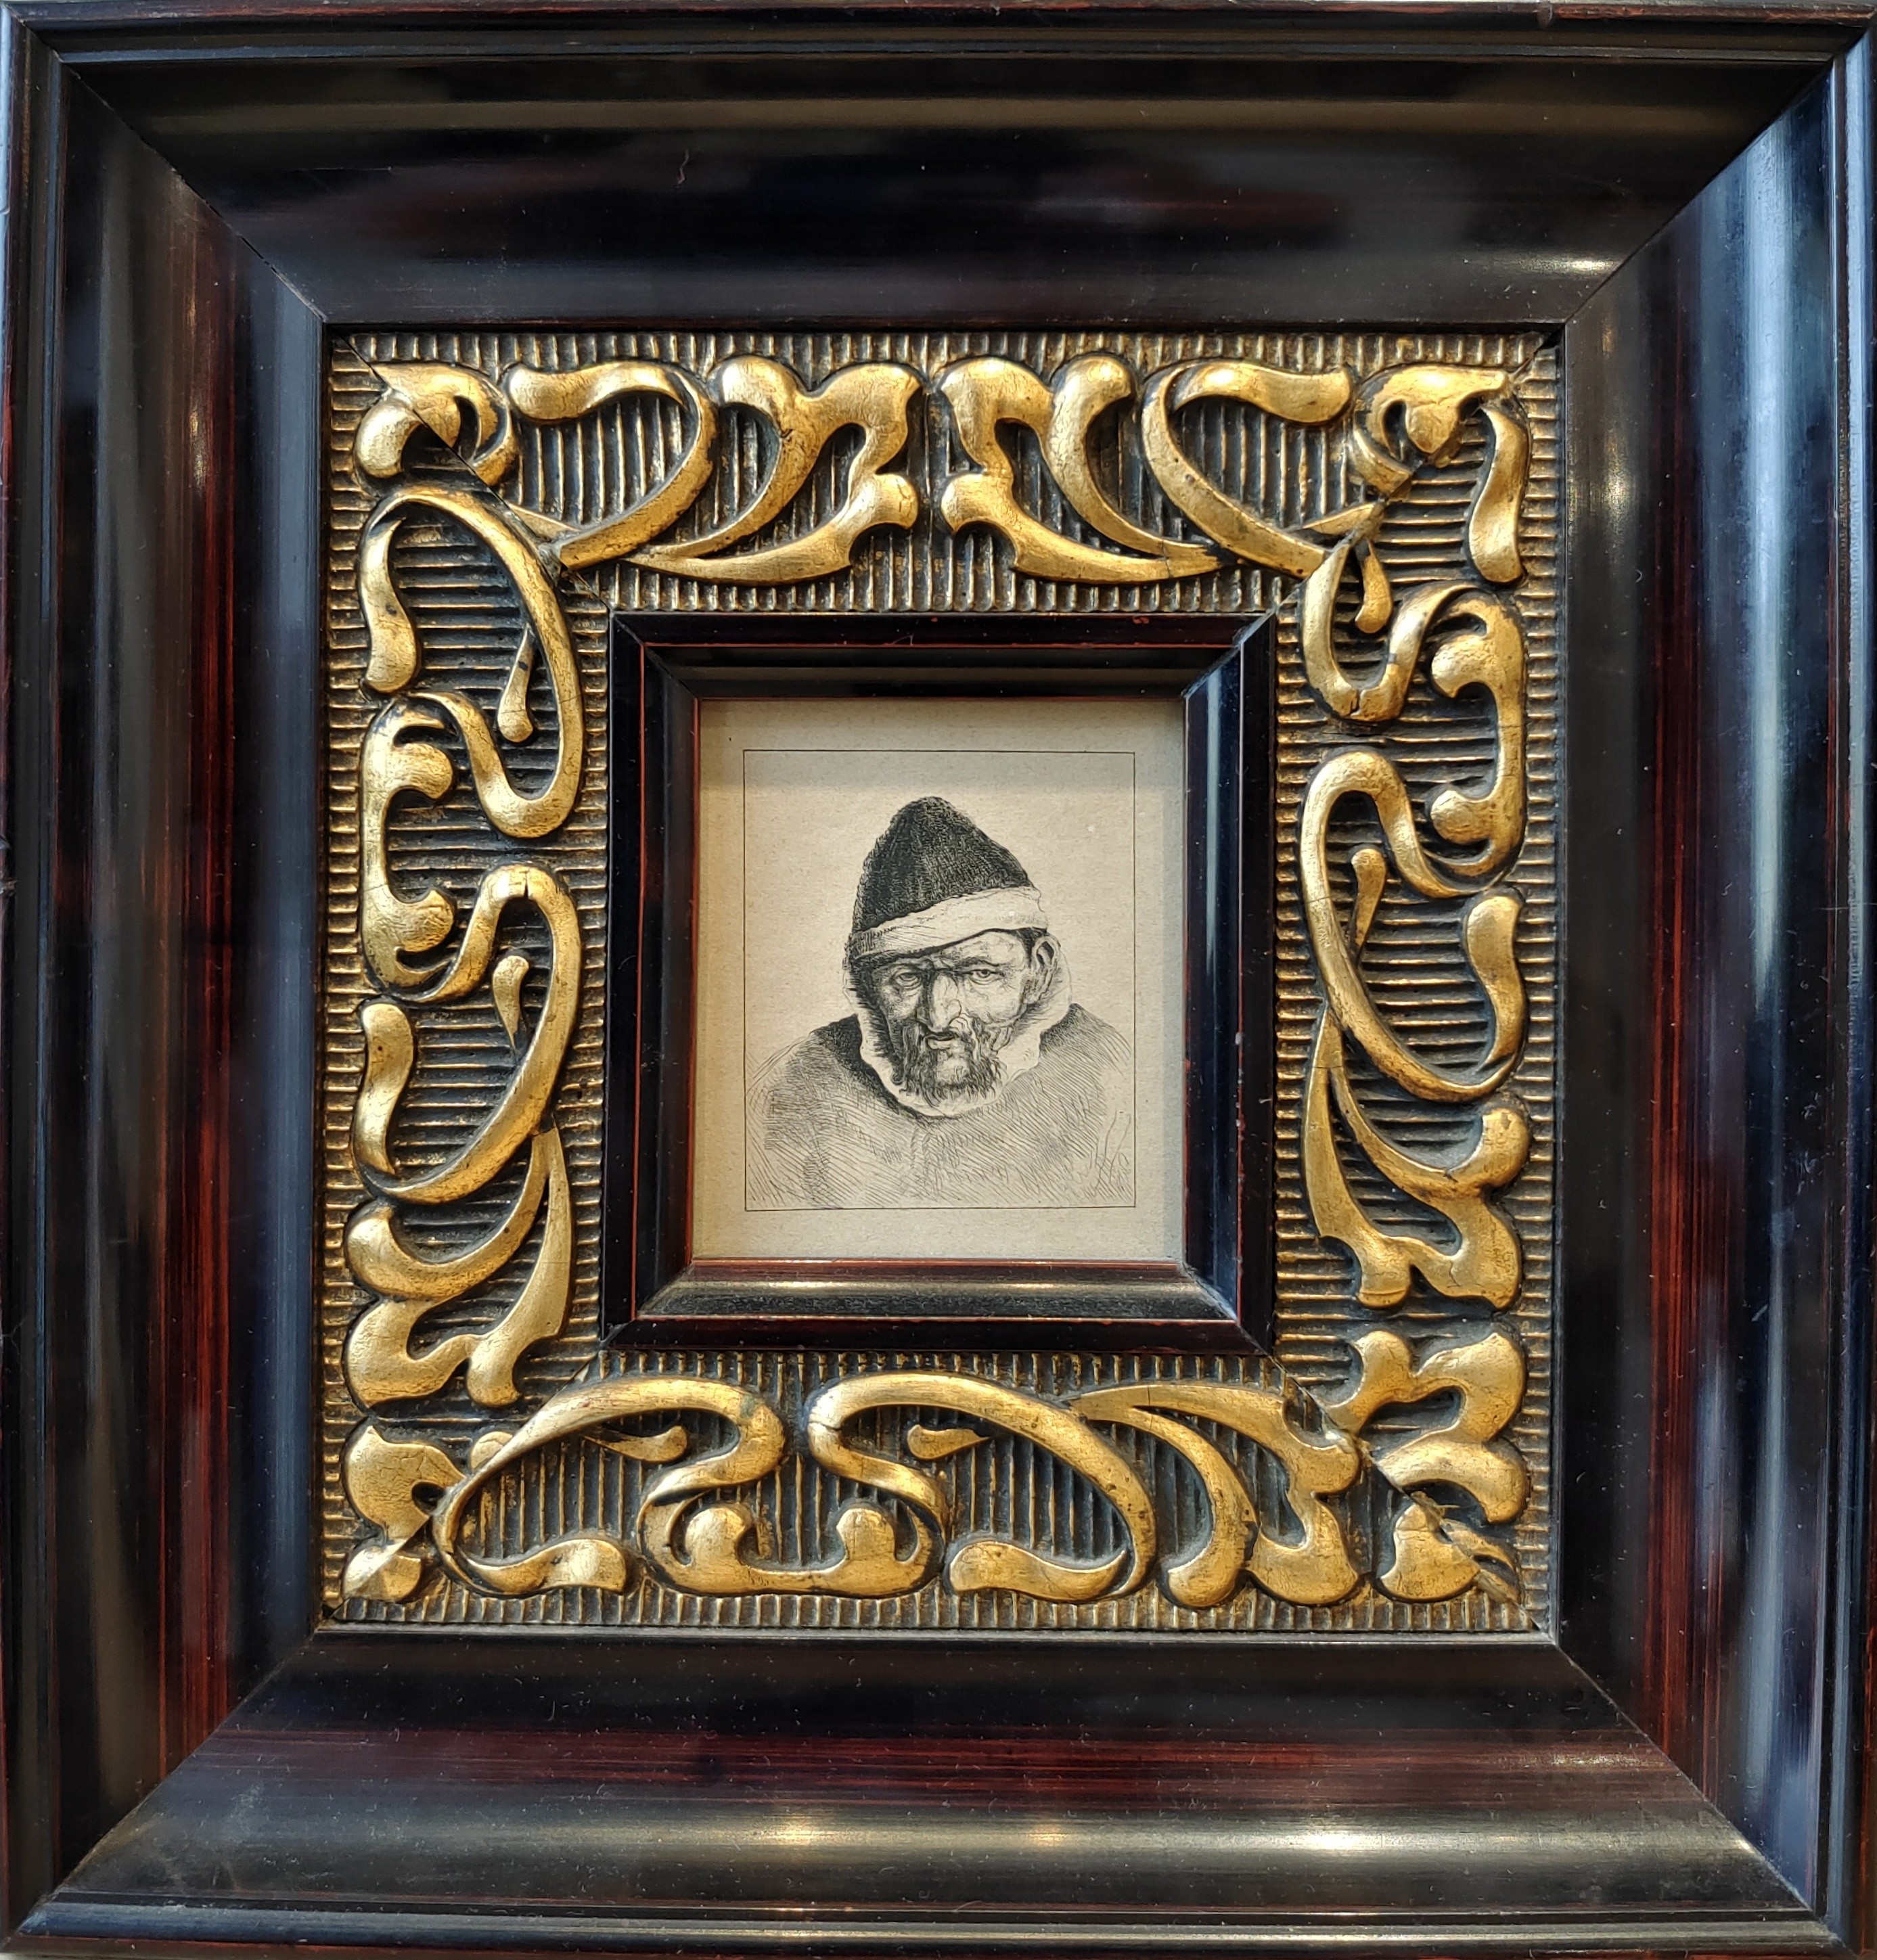 Ostade (1610-1685) "Brustbild eines Bauern mit spitzer Mütze"